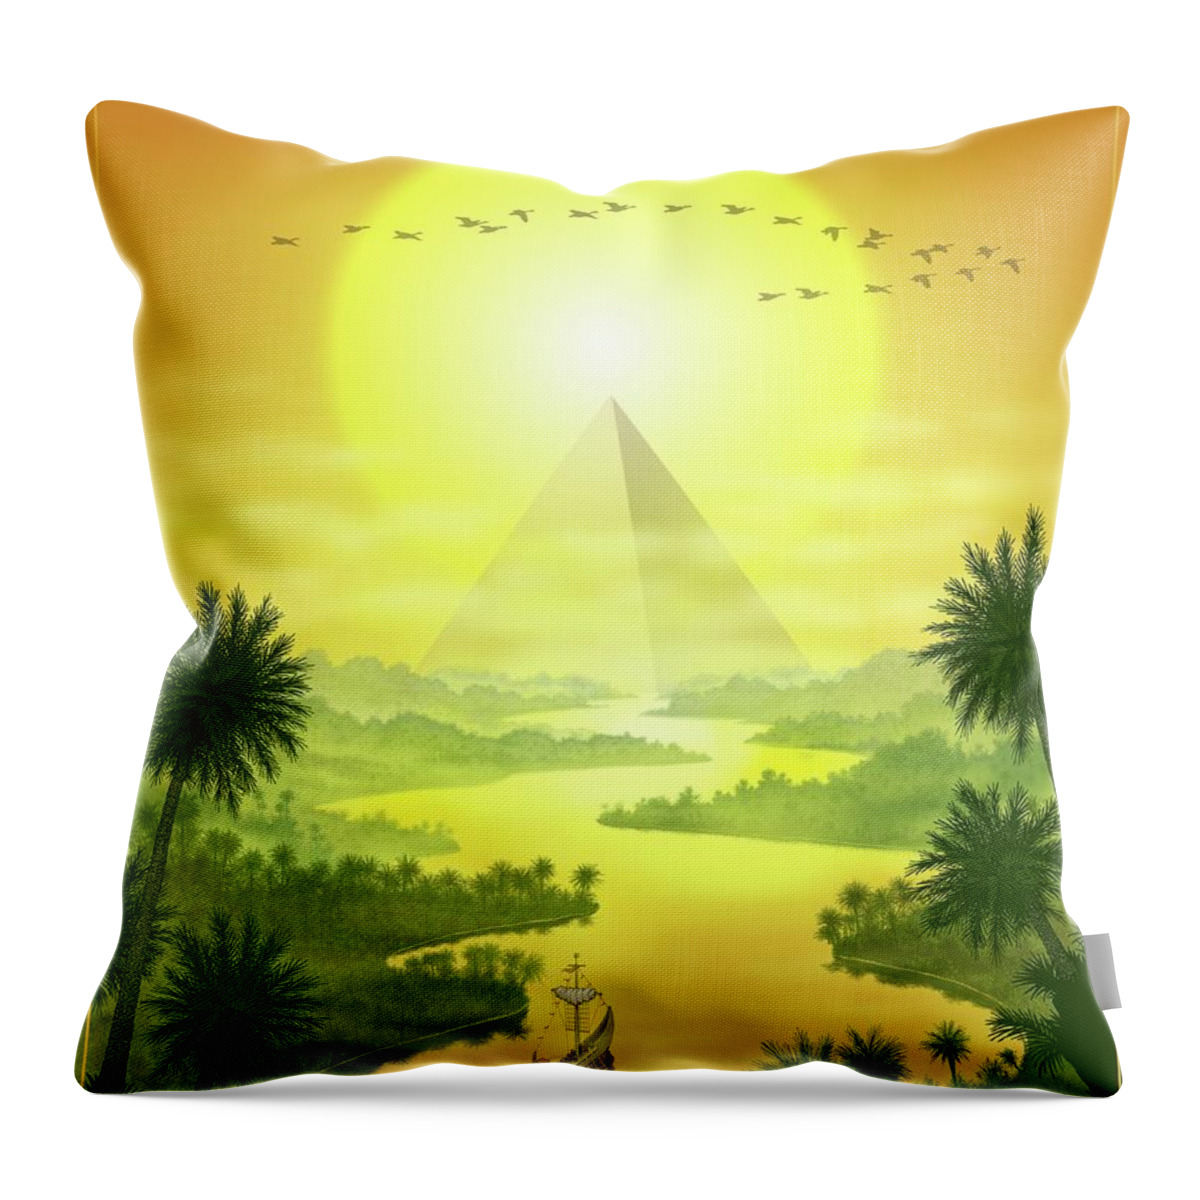 Landscape Throw Pillow featuring the digital art Sun King by Scott Ross